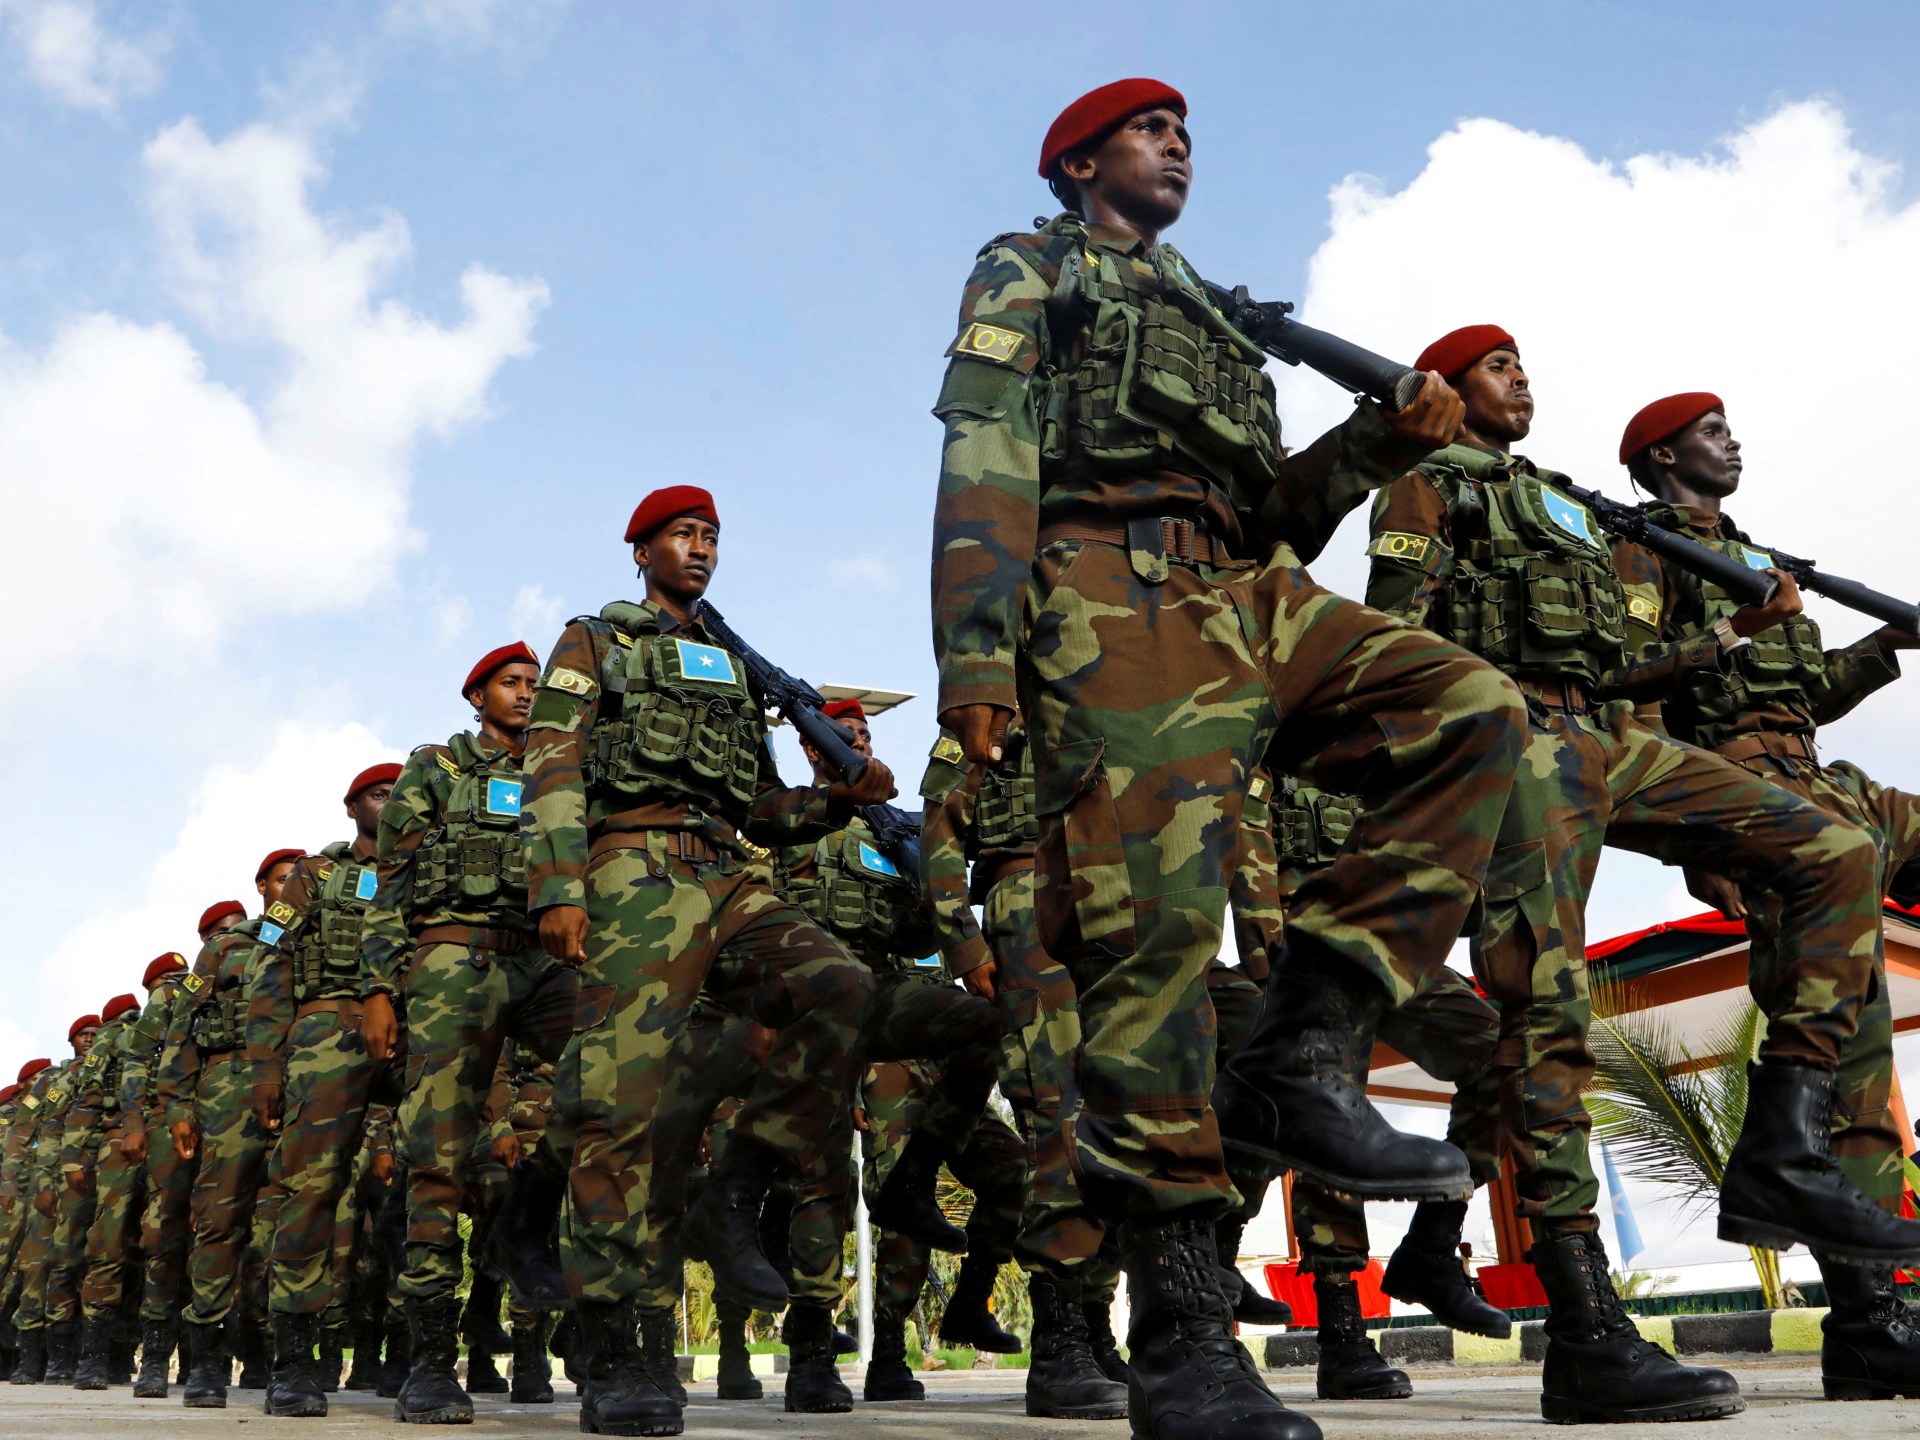 انسحاب قوات حفظ السلام من الصومال.. السياقات والإنجازات والتحديات | أخبار سياسة – البوكس نيوز